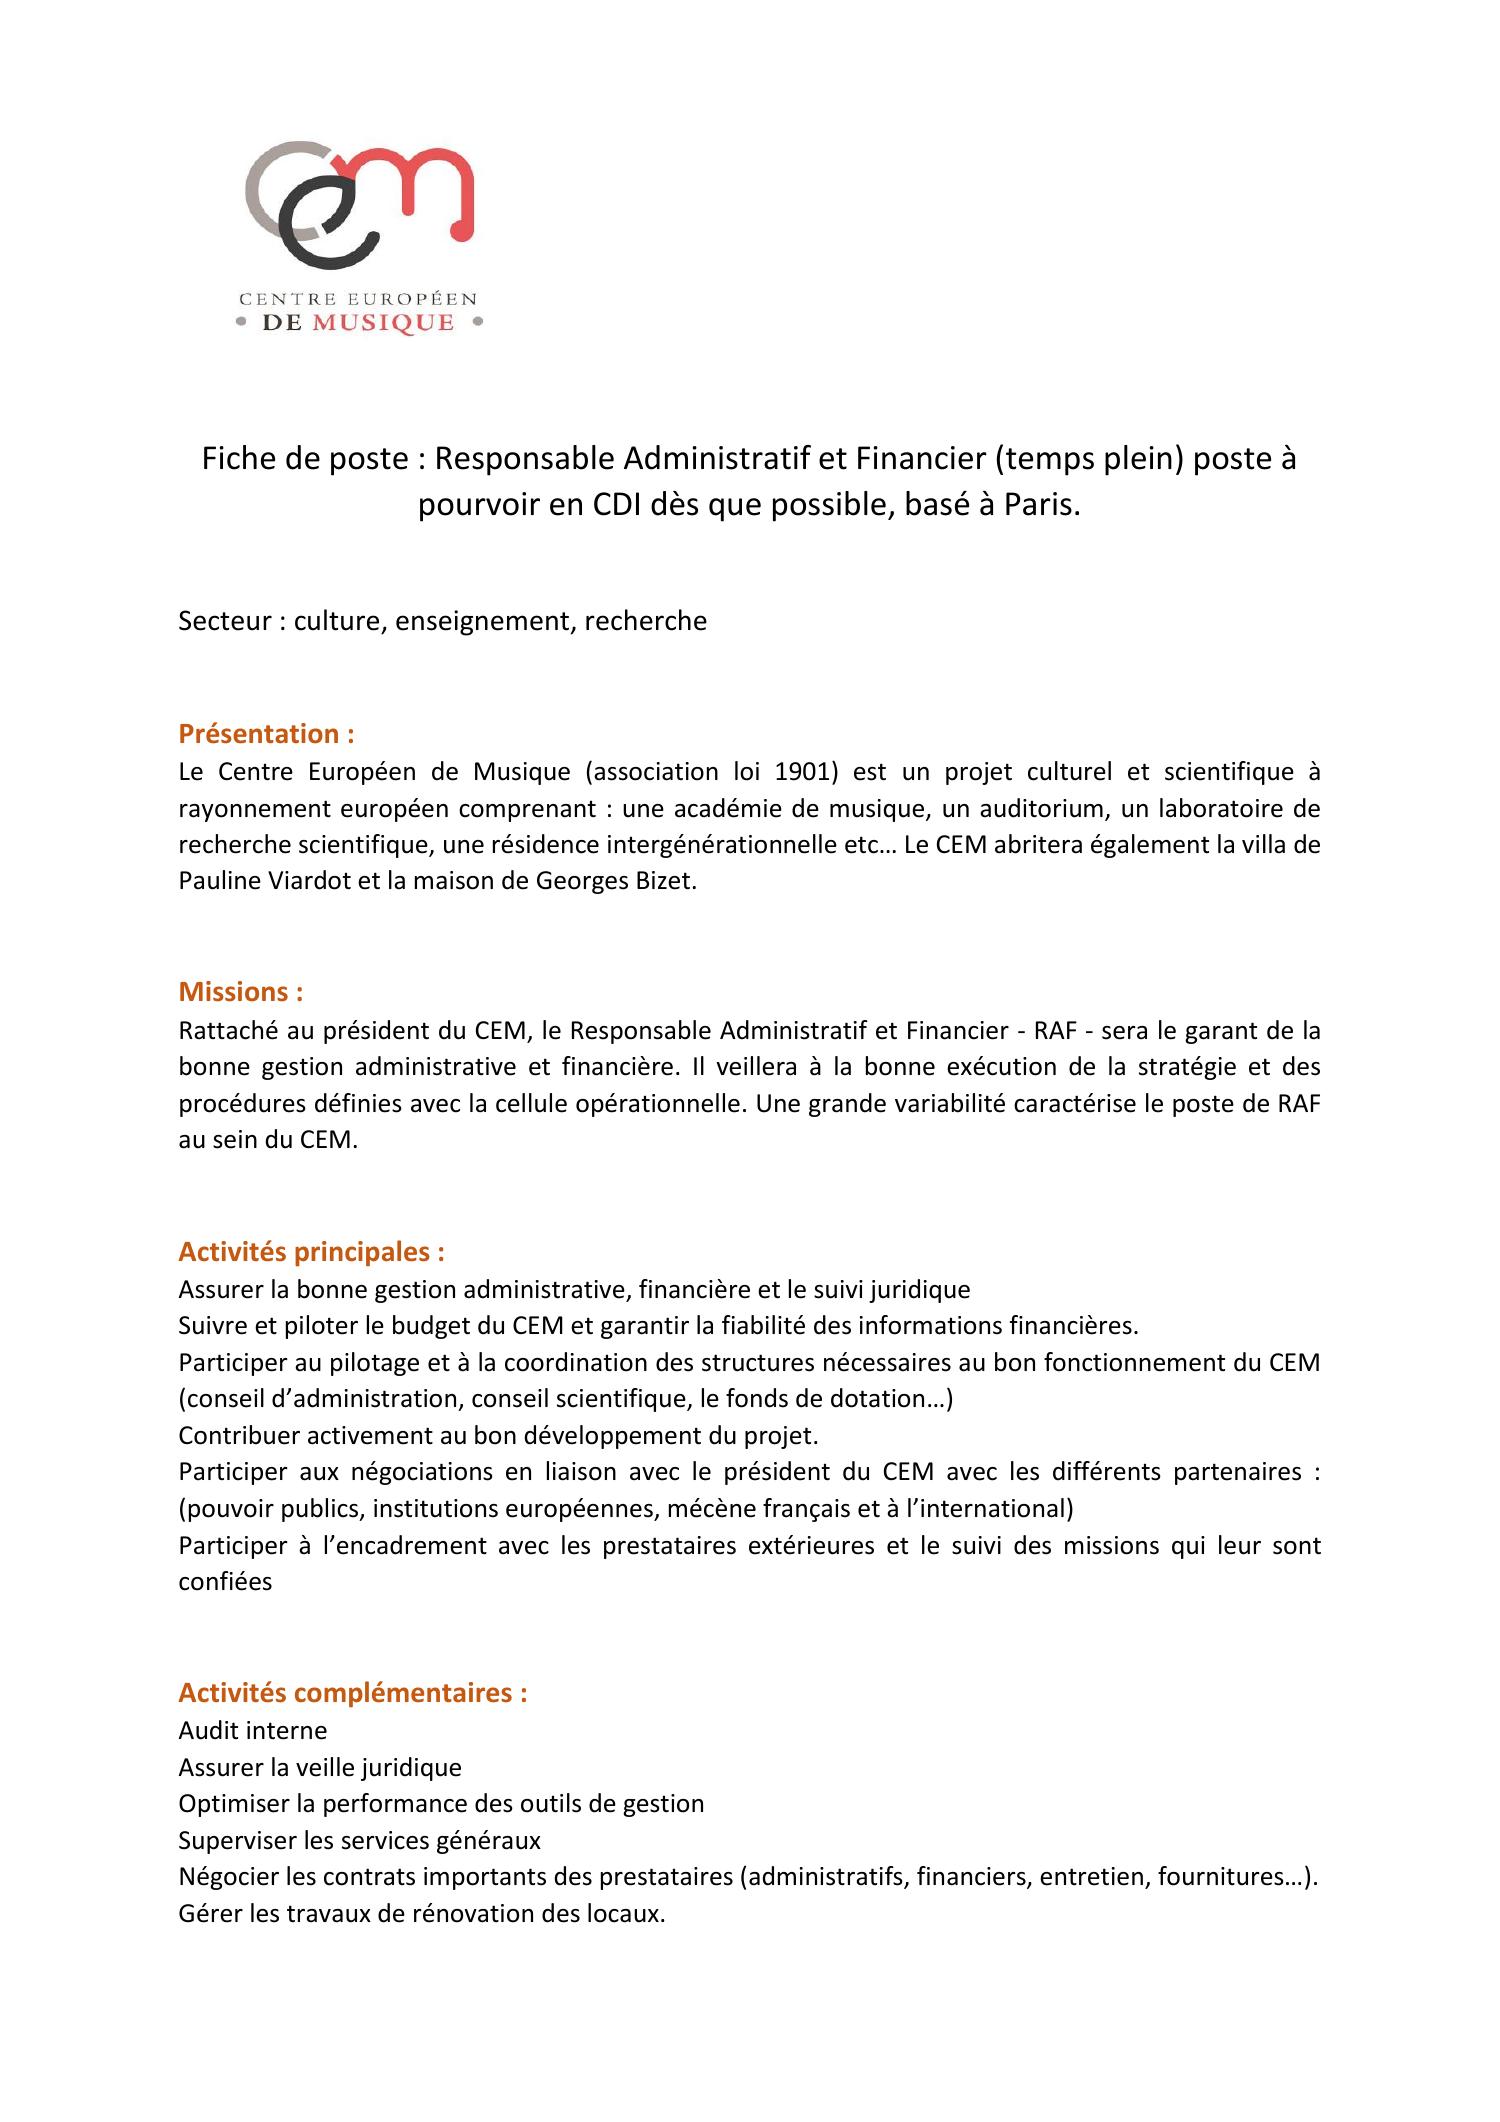 Fiche de poste  Responsable administratif et financier  (1).pdf